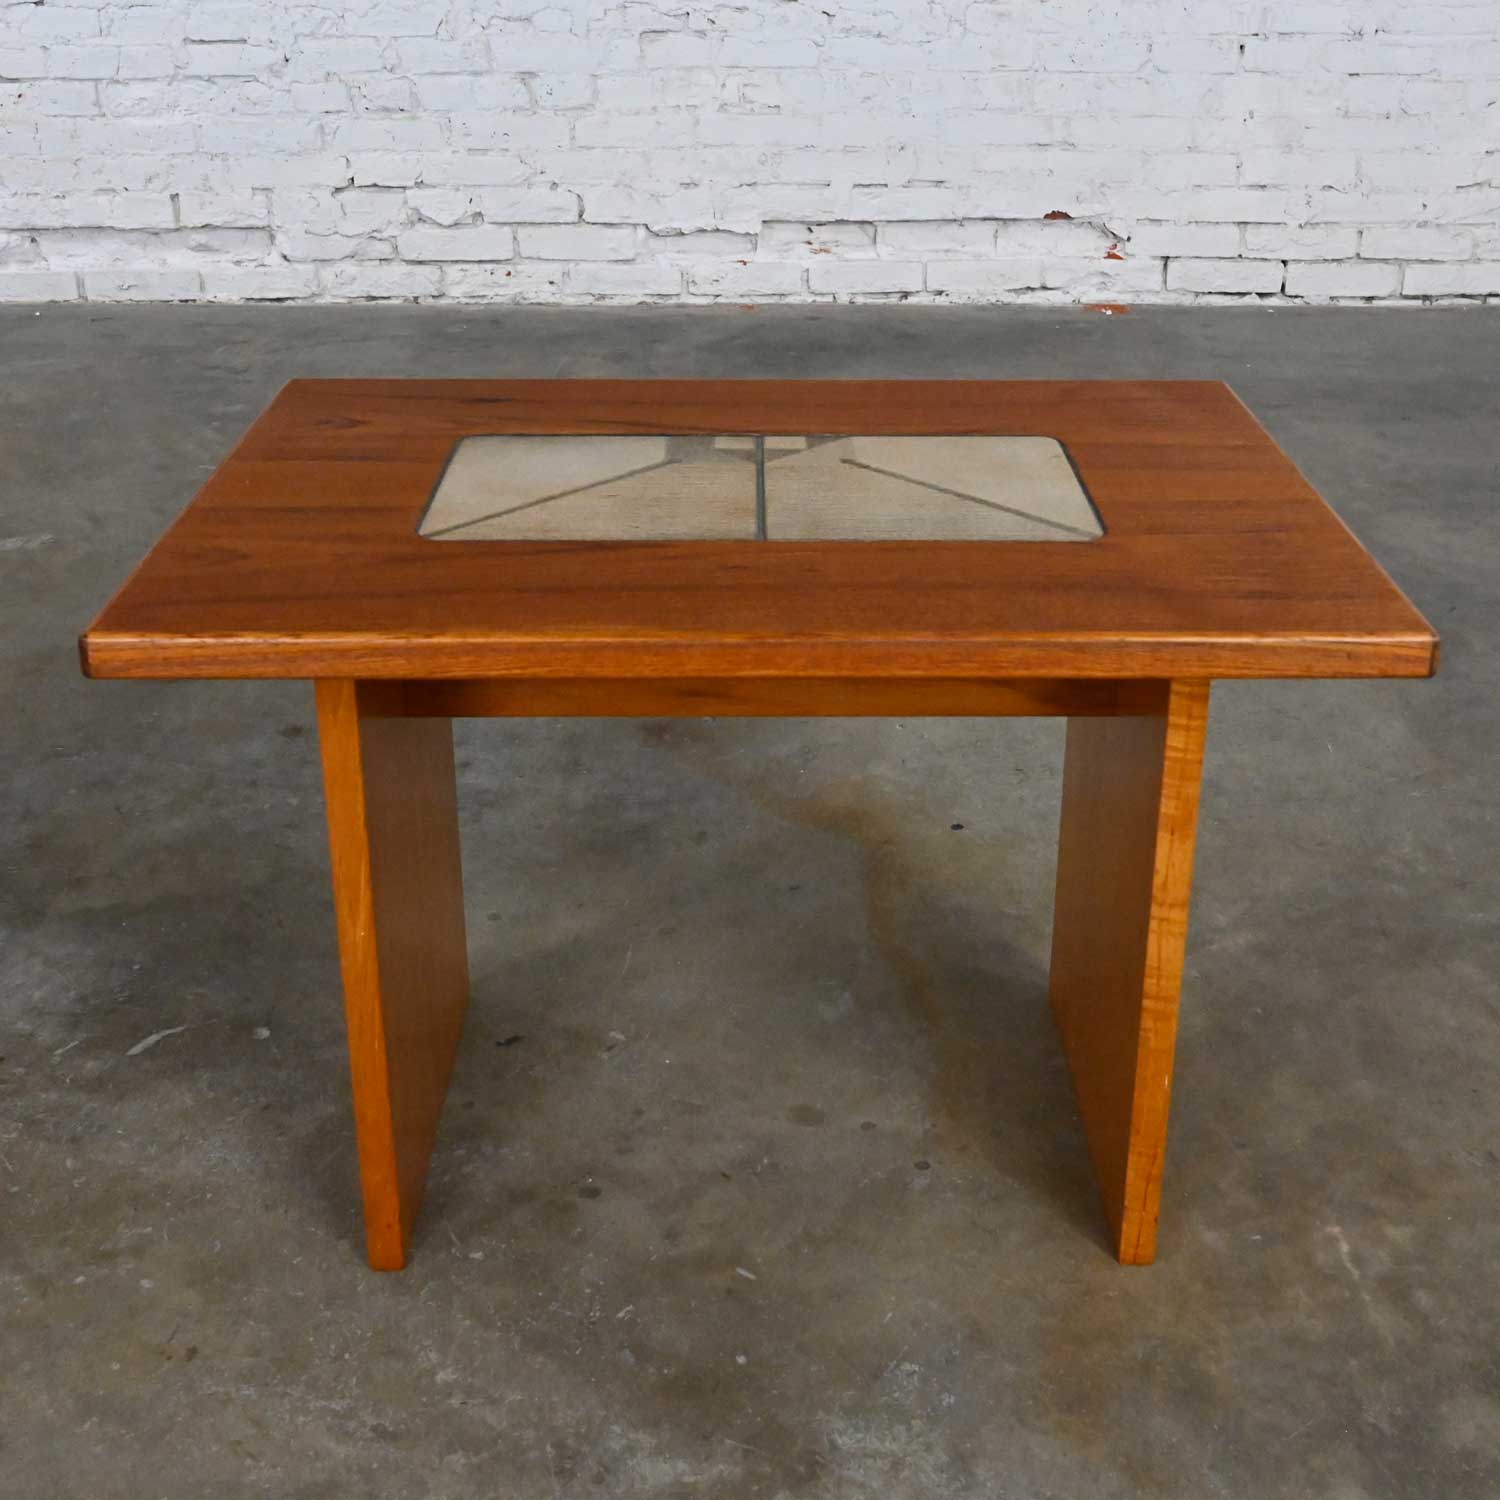 Scandinavian Modern Teak Rectangular Side Table or End Table with Lovely Tile Insert by Gangso Mobler